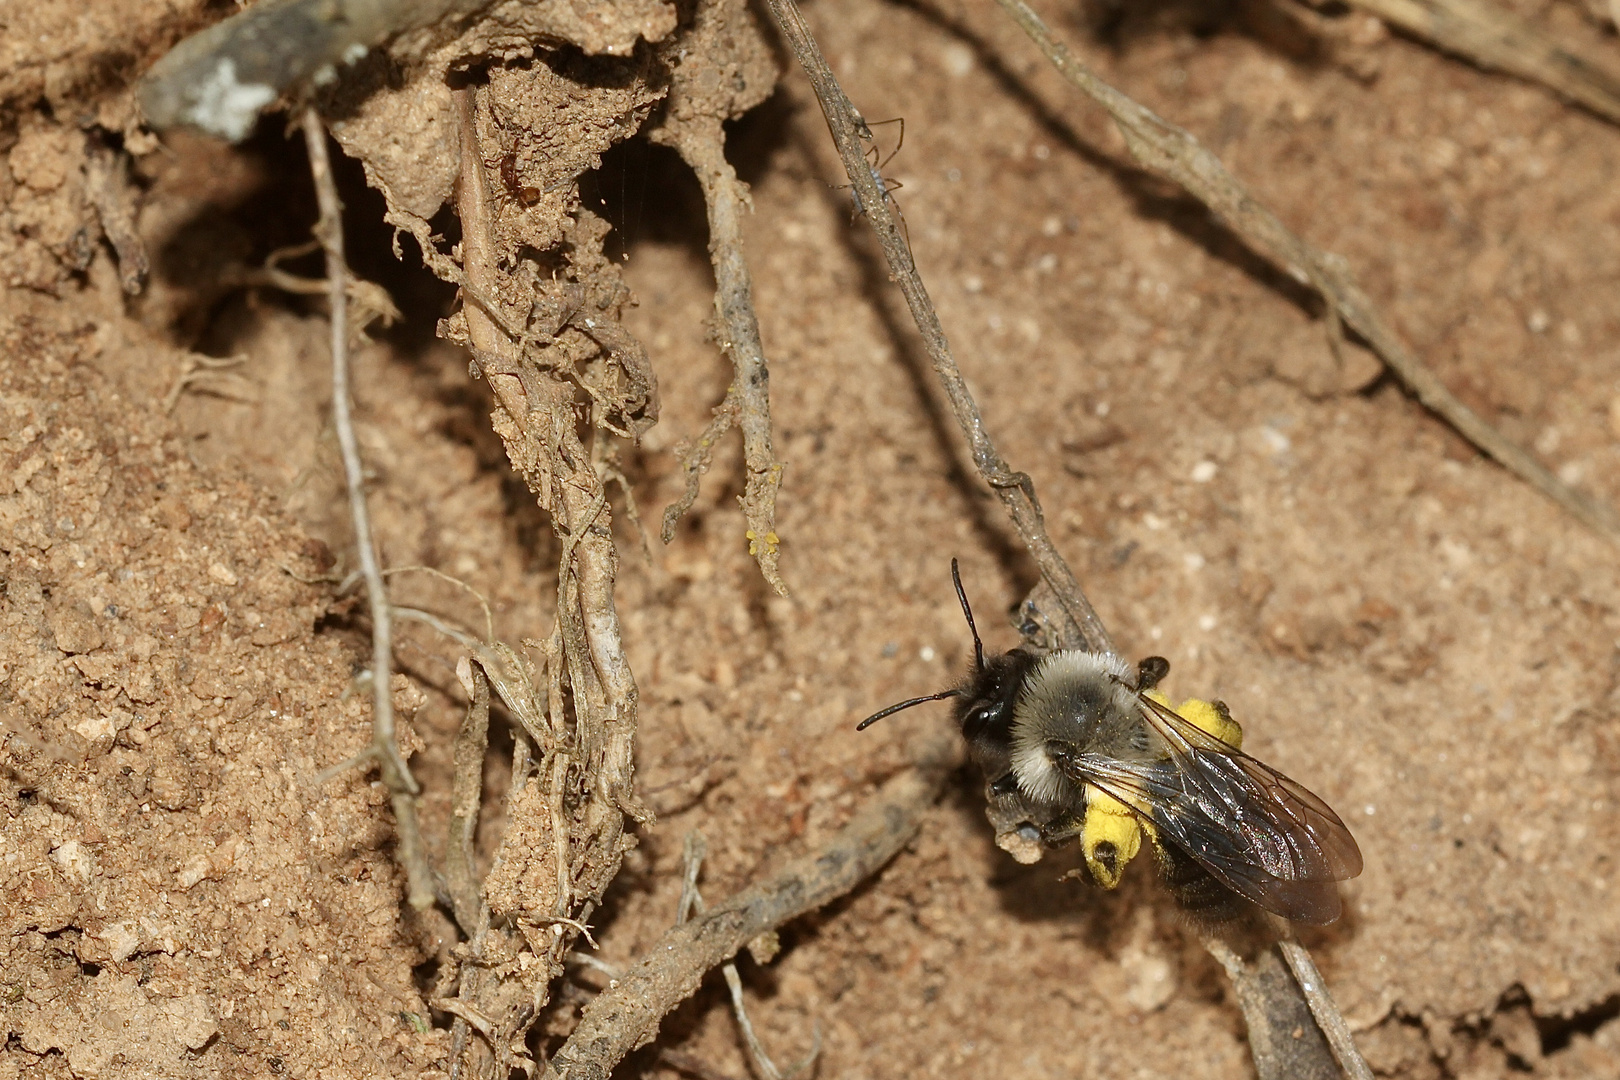 (1) Ein Weibchen der Weiden- = Vagabundierenden Sandbiene